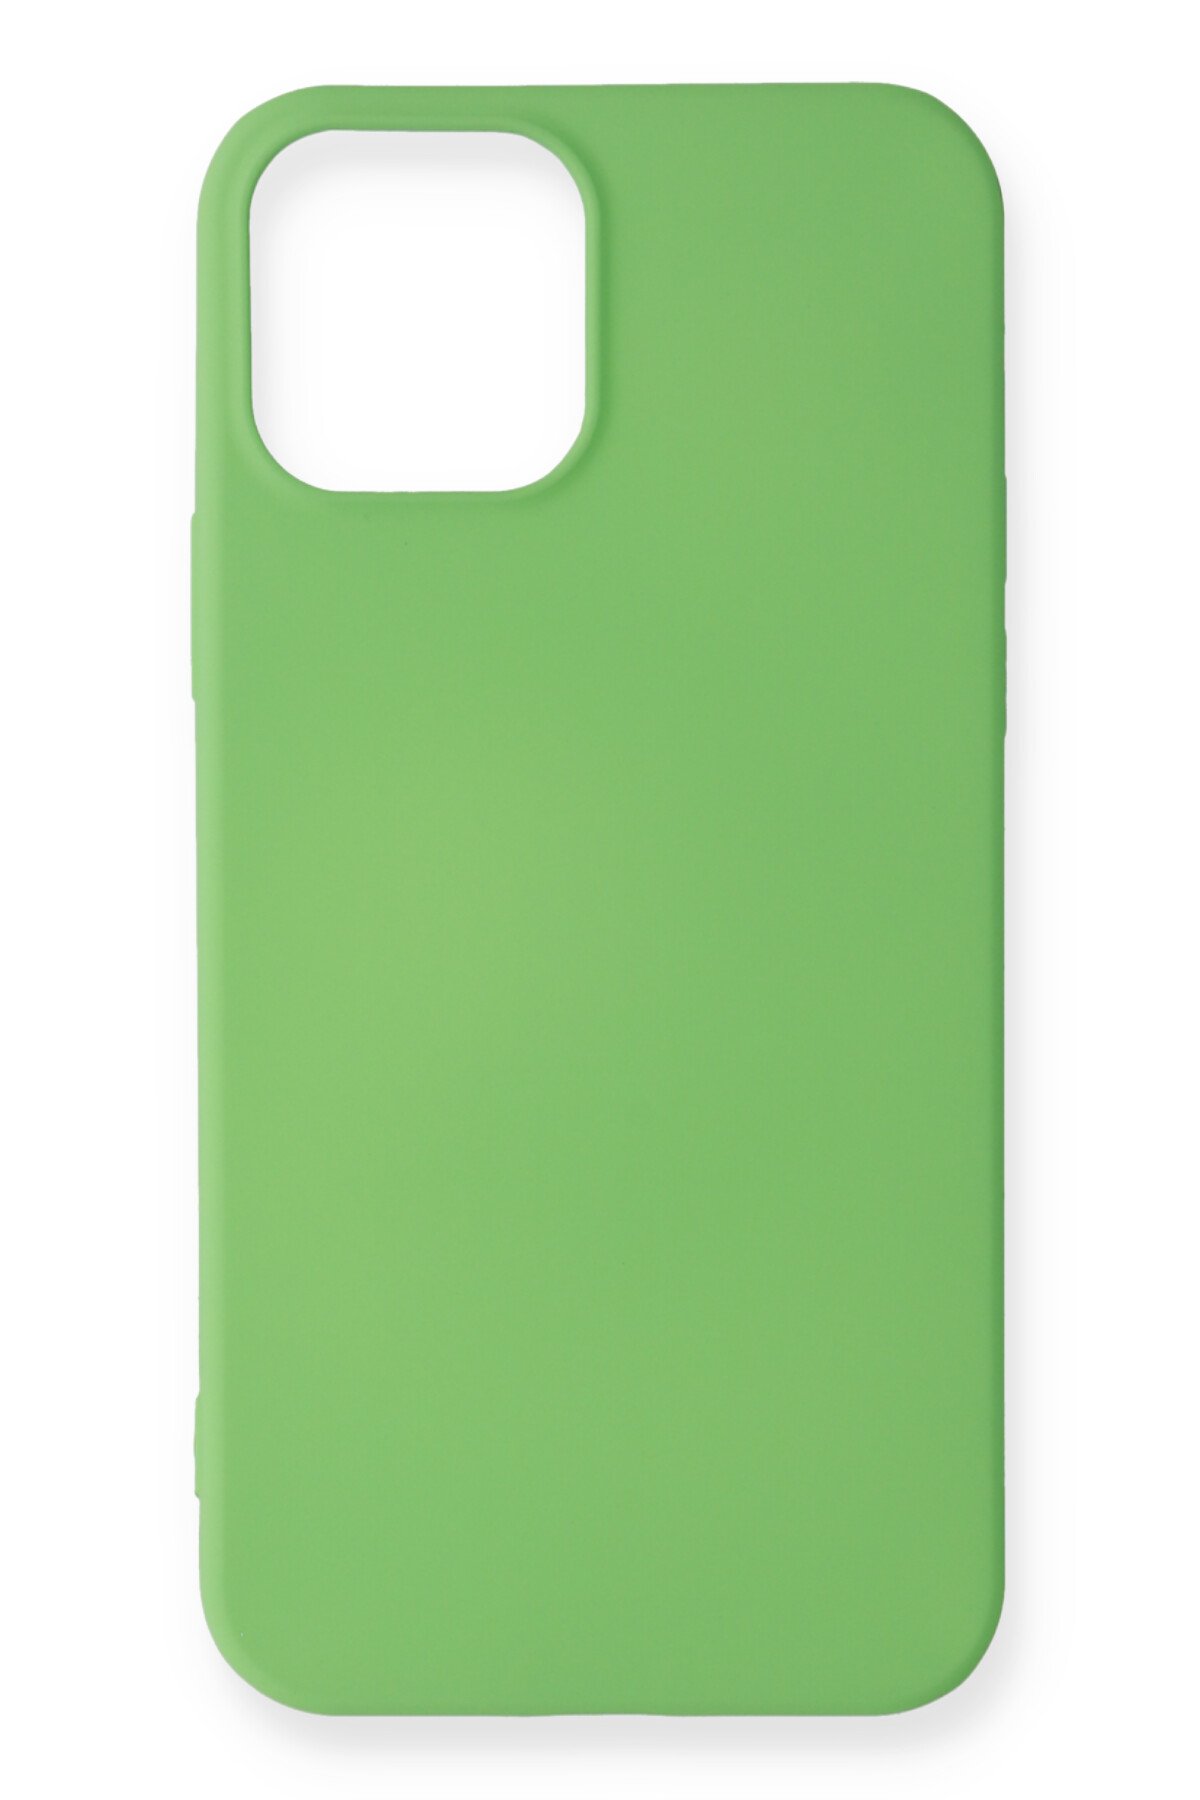 NewFace Newface iPhone 12 Pro Max Kılıf Premium Rubber Silikon - Yeşil